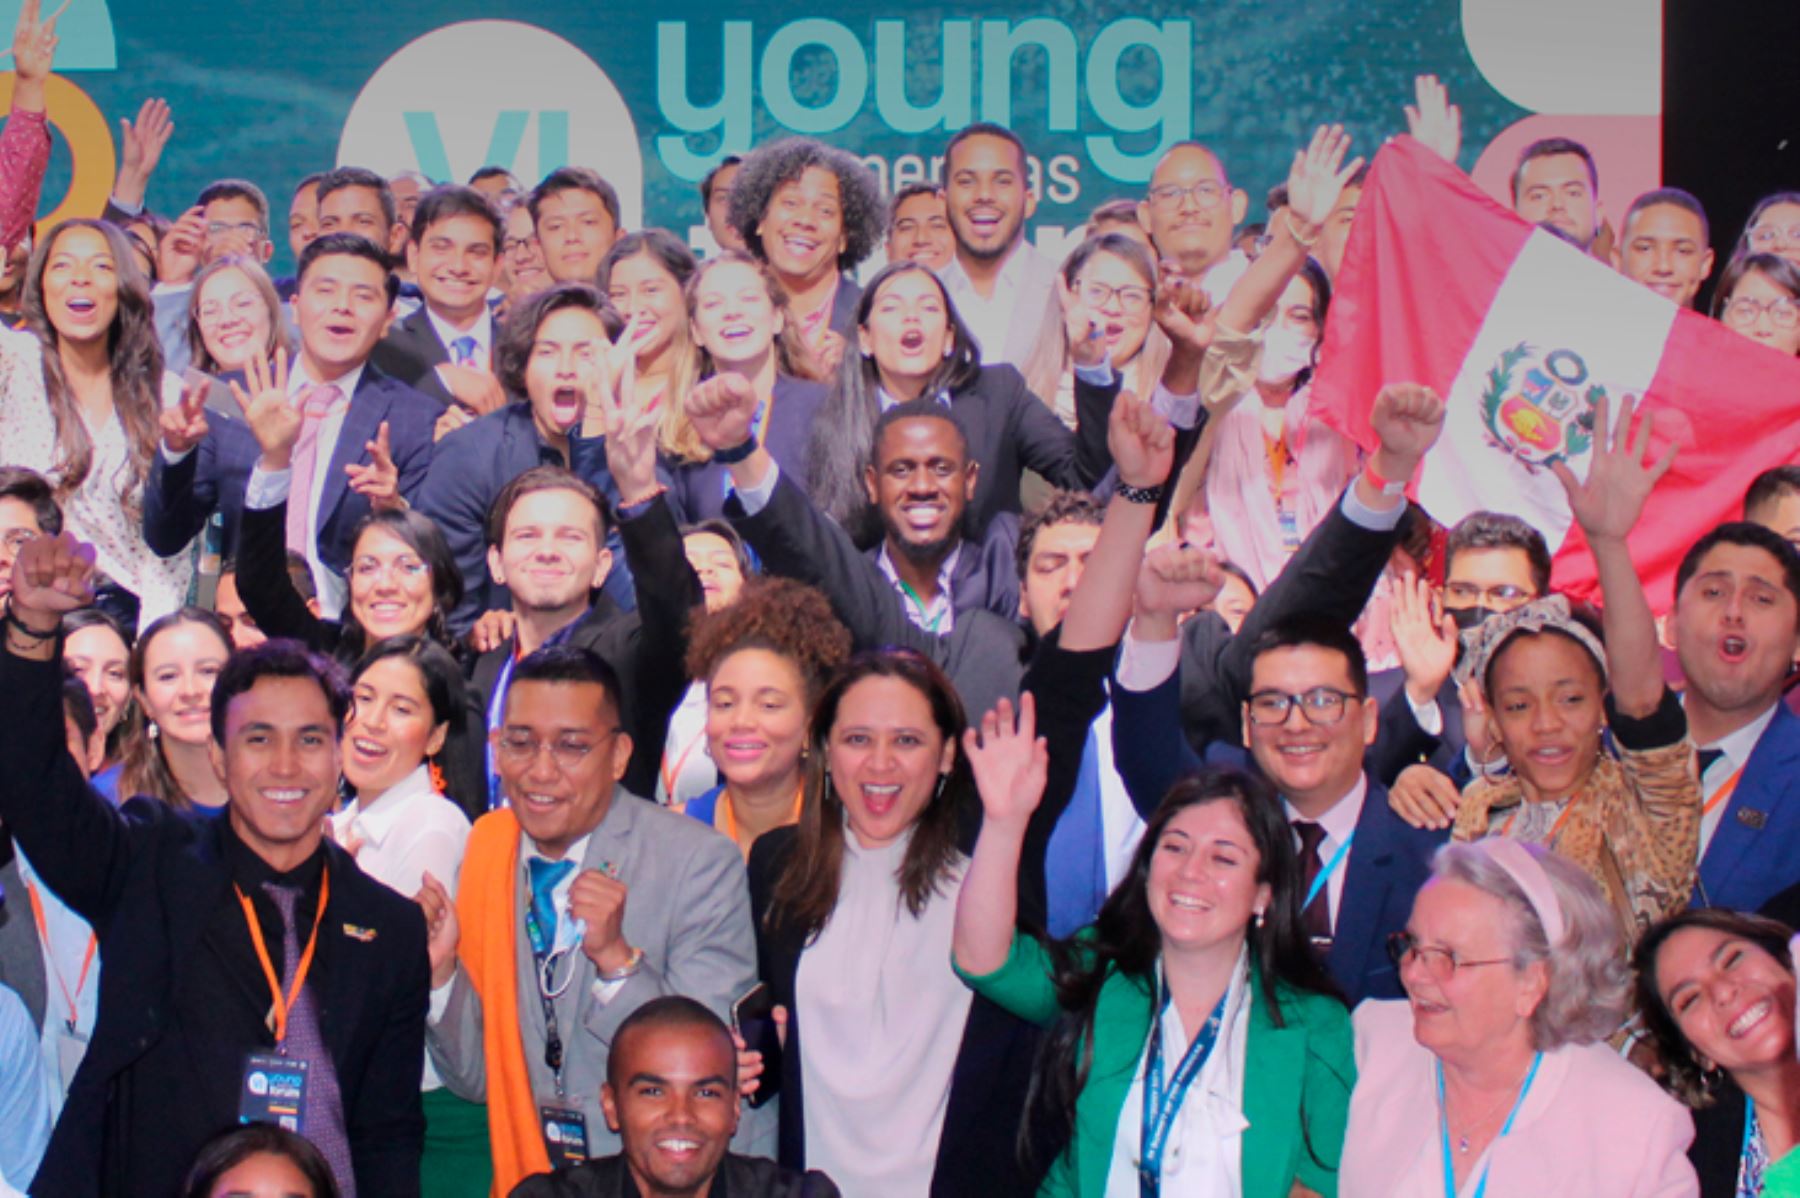 La organización internacional YABT trabaja en cooperación con la OEA para promover el desarrollo social y económico de los jóvenes de todo el mundo, a través de gobiernos, organizaciones internacionales, el sector privado y otros actores globales en el empoderamiento de la juventud. Foto: UNMSM.